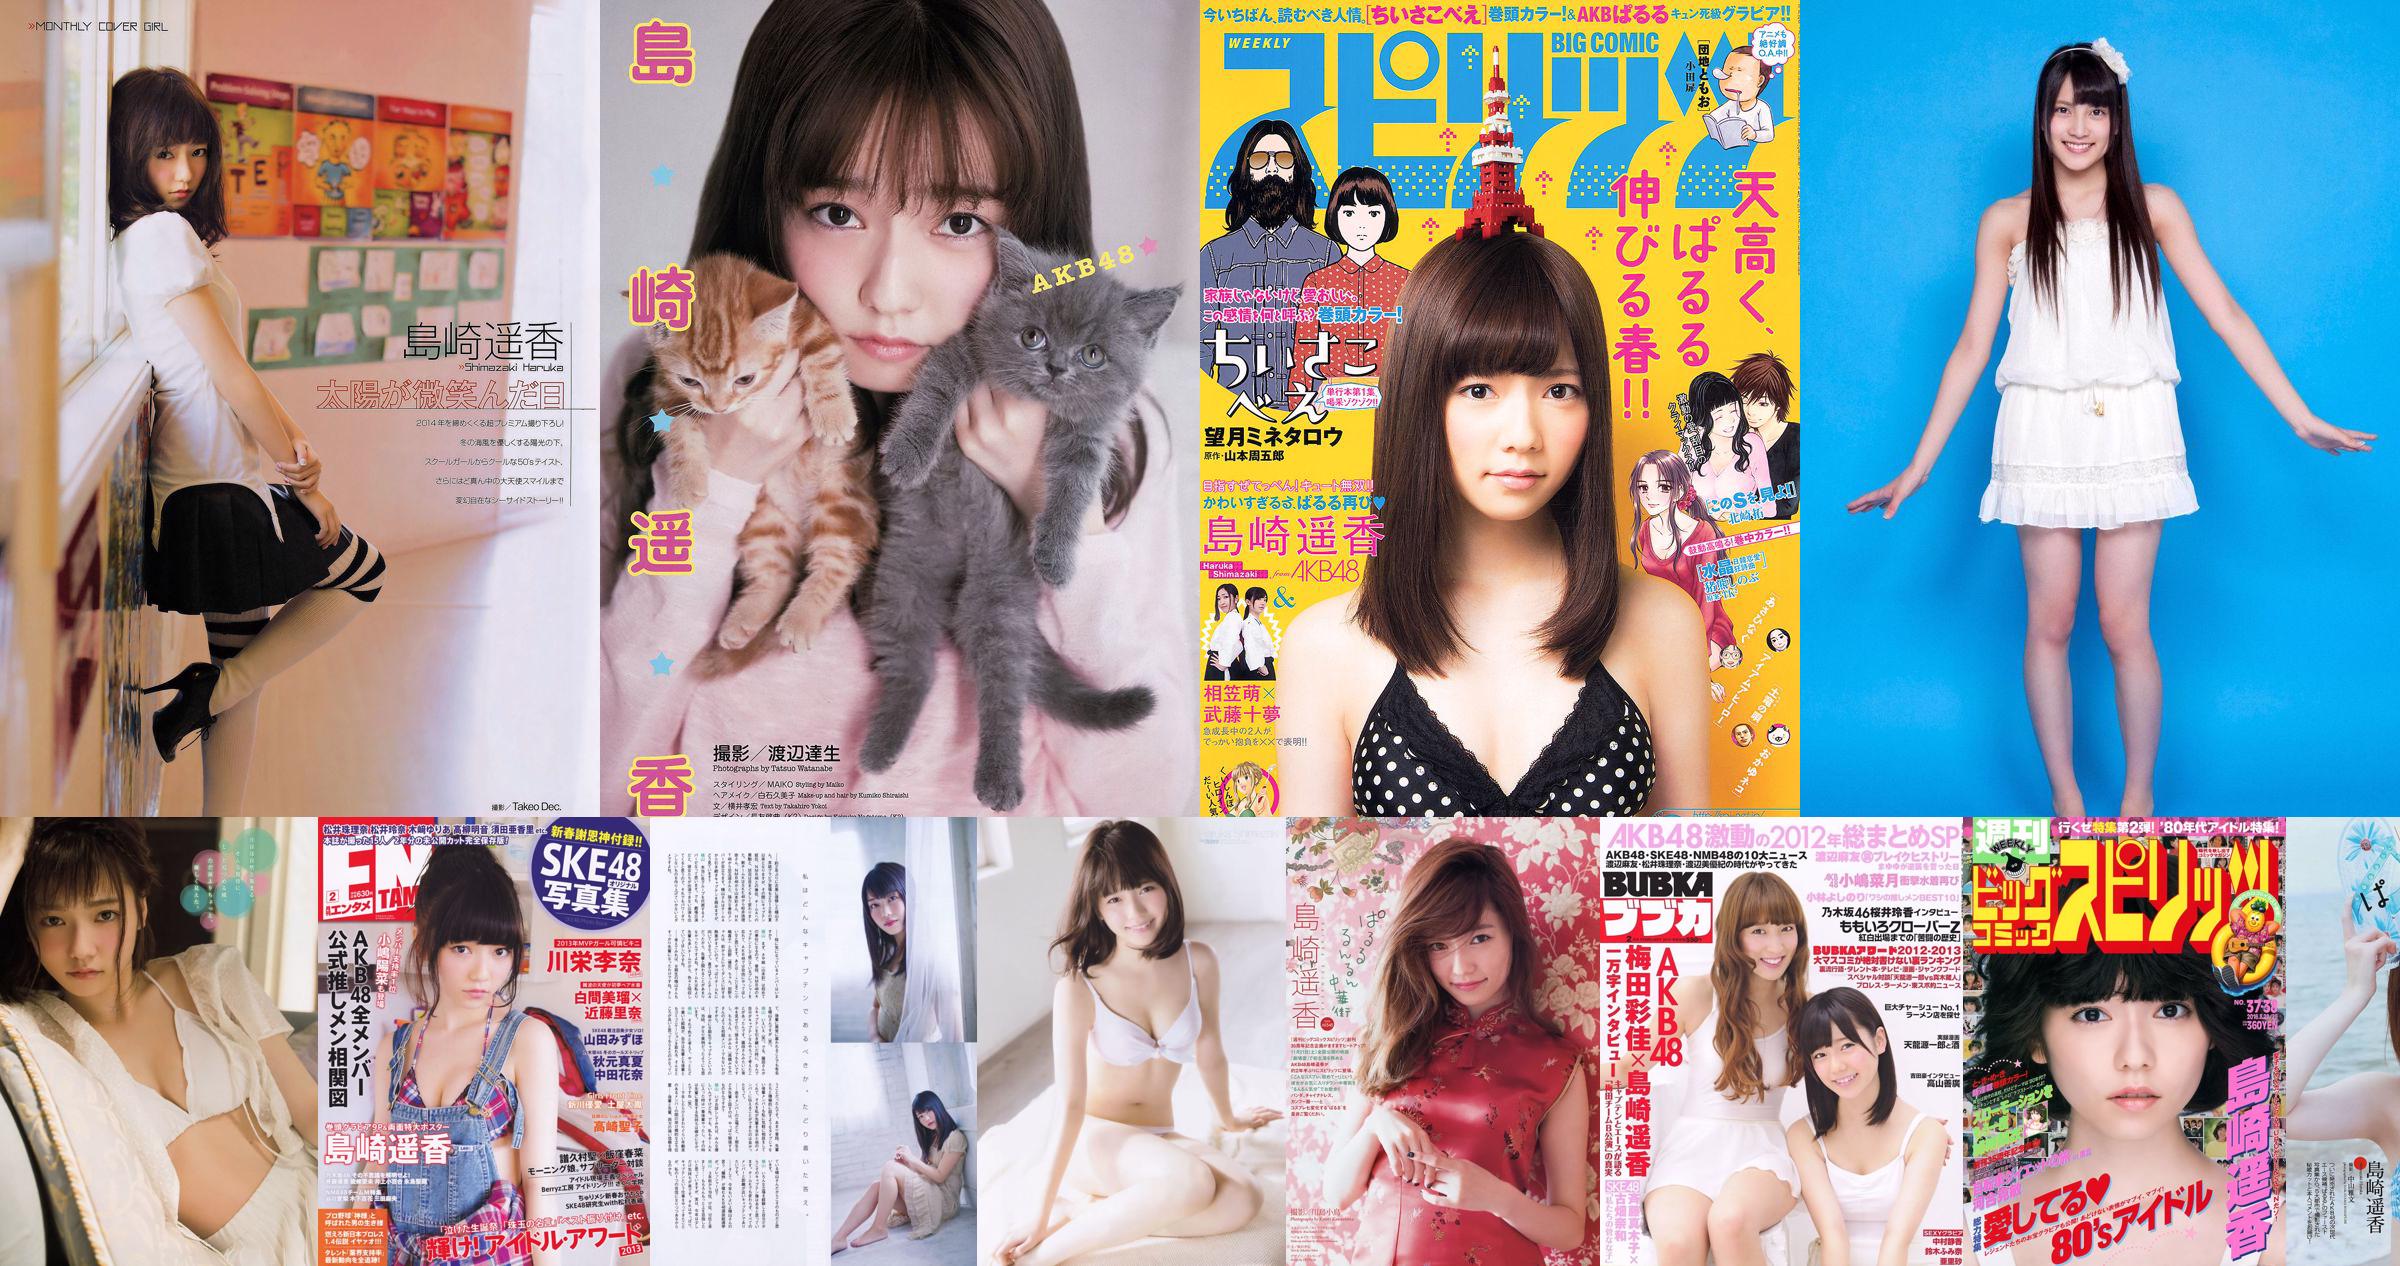 [Young Magazine] Haruka Shimazaki Rima Nishizaki Natsumi Yoshida 2014 No.10 Photograph No.f40829 Page 1